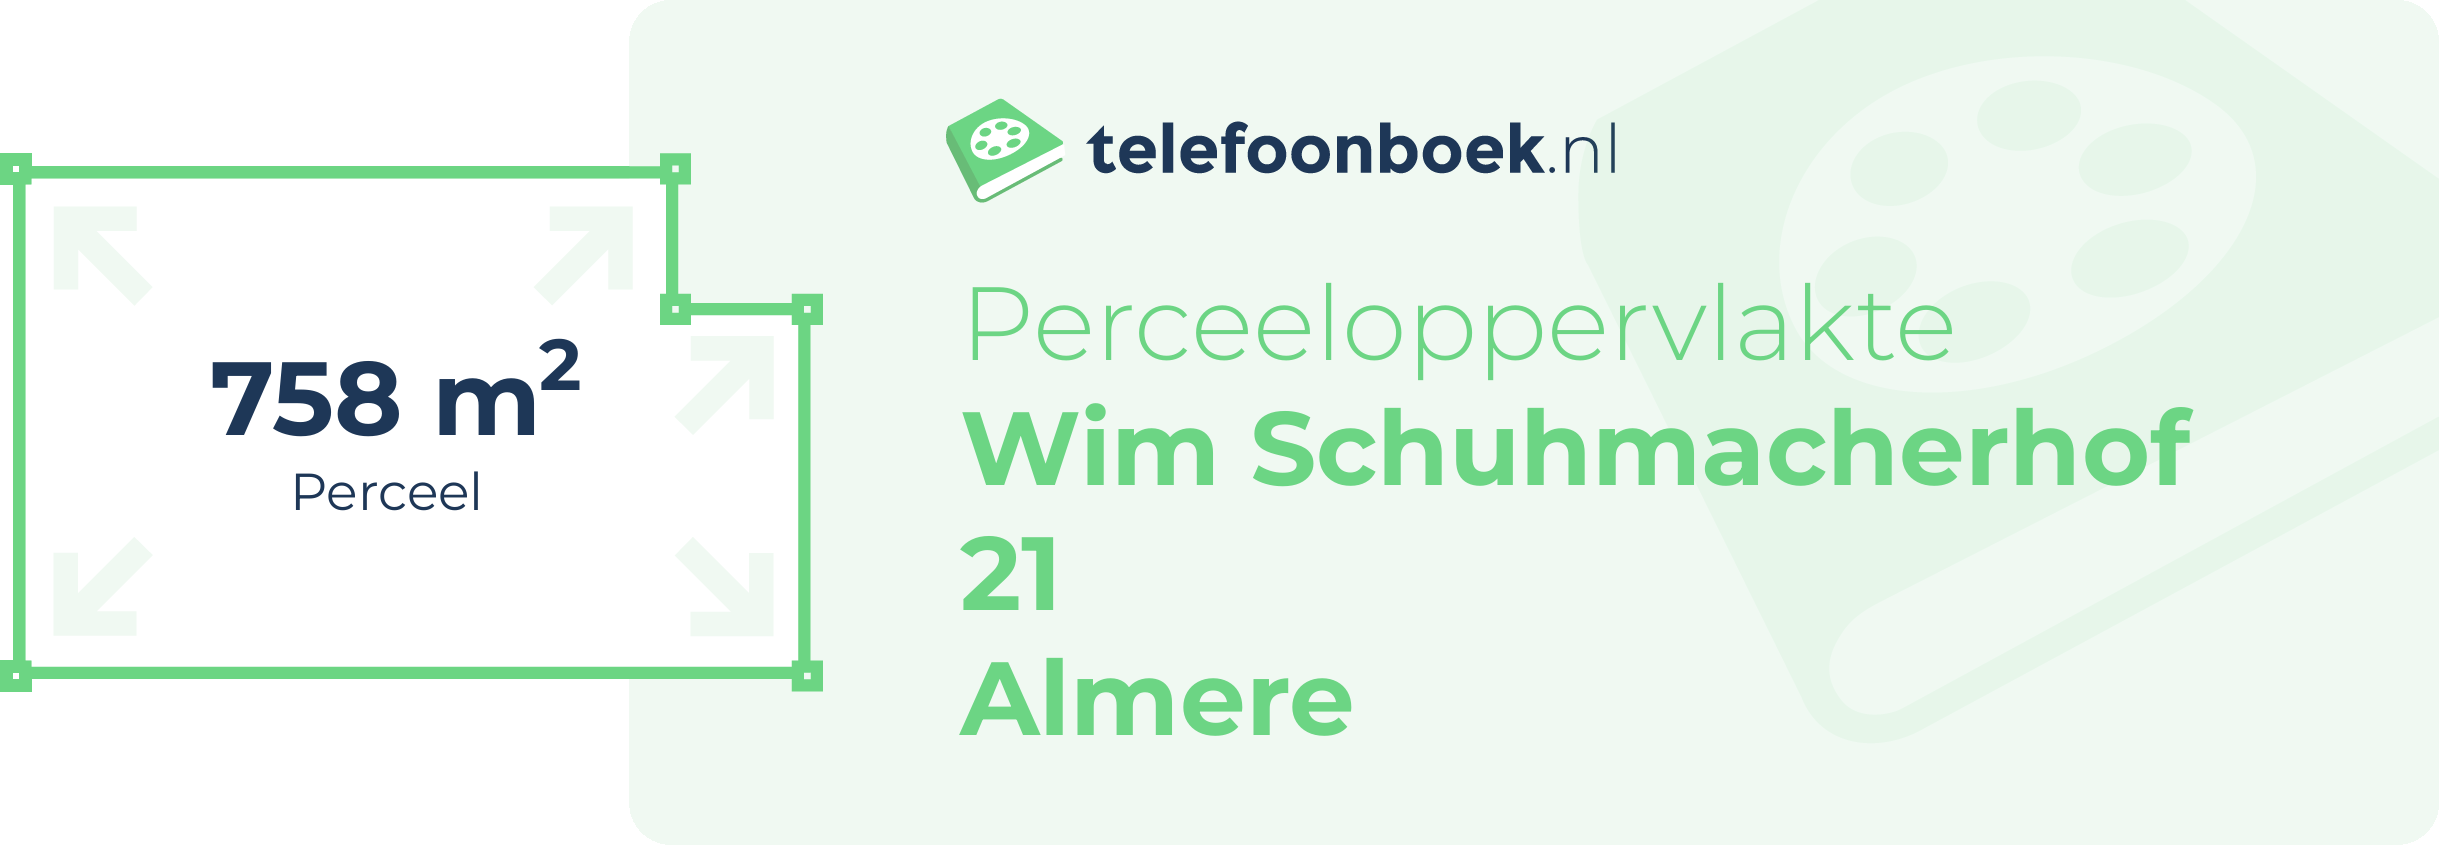 Perceeloppervlakte Wim Schuhmacherhof 21 Almere